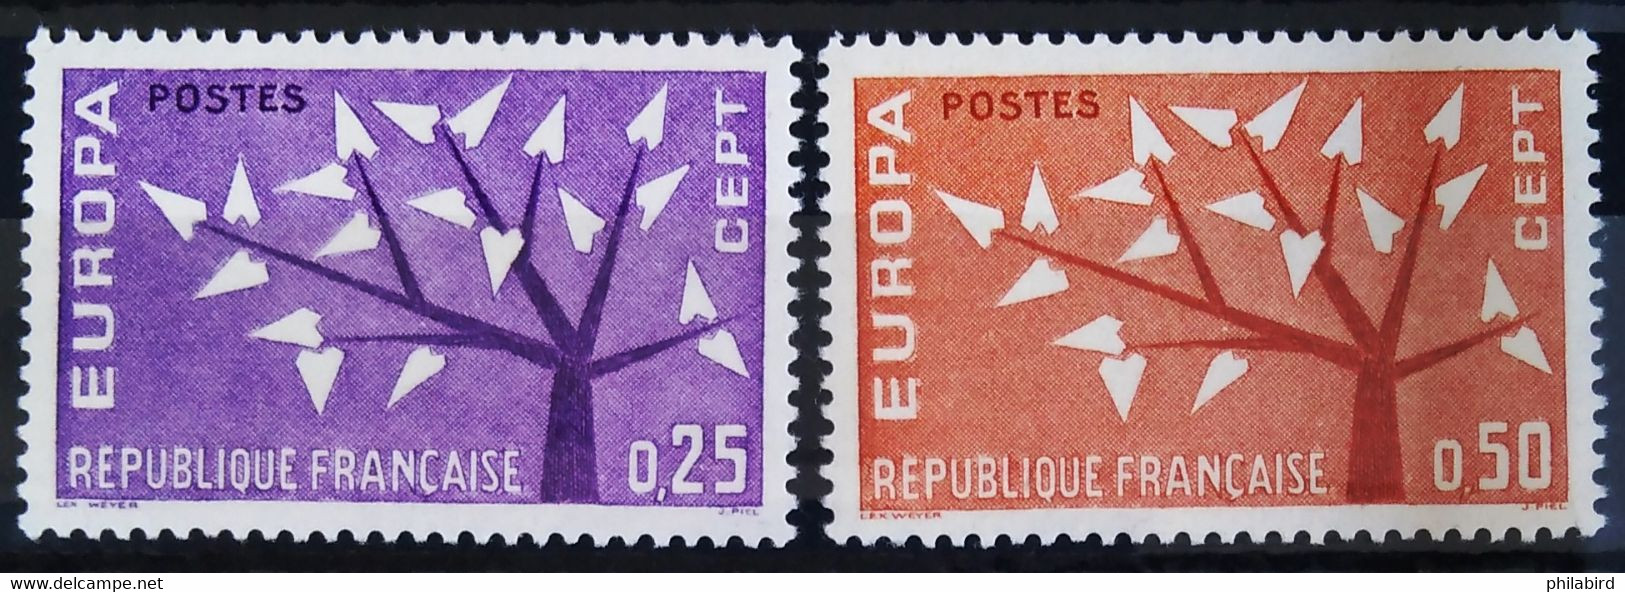 EUROPA 1962 - FRANCE                  N° 1358/1359                        NEUF* - 1962